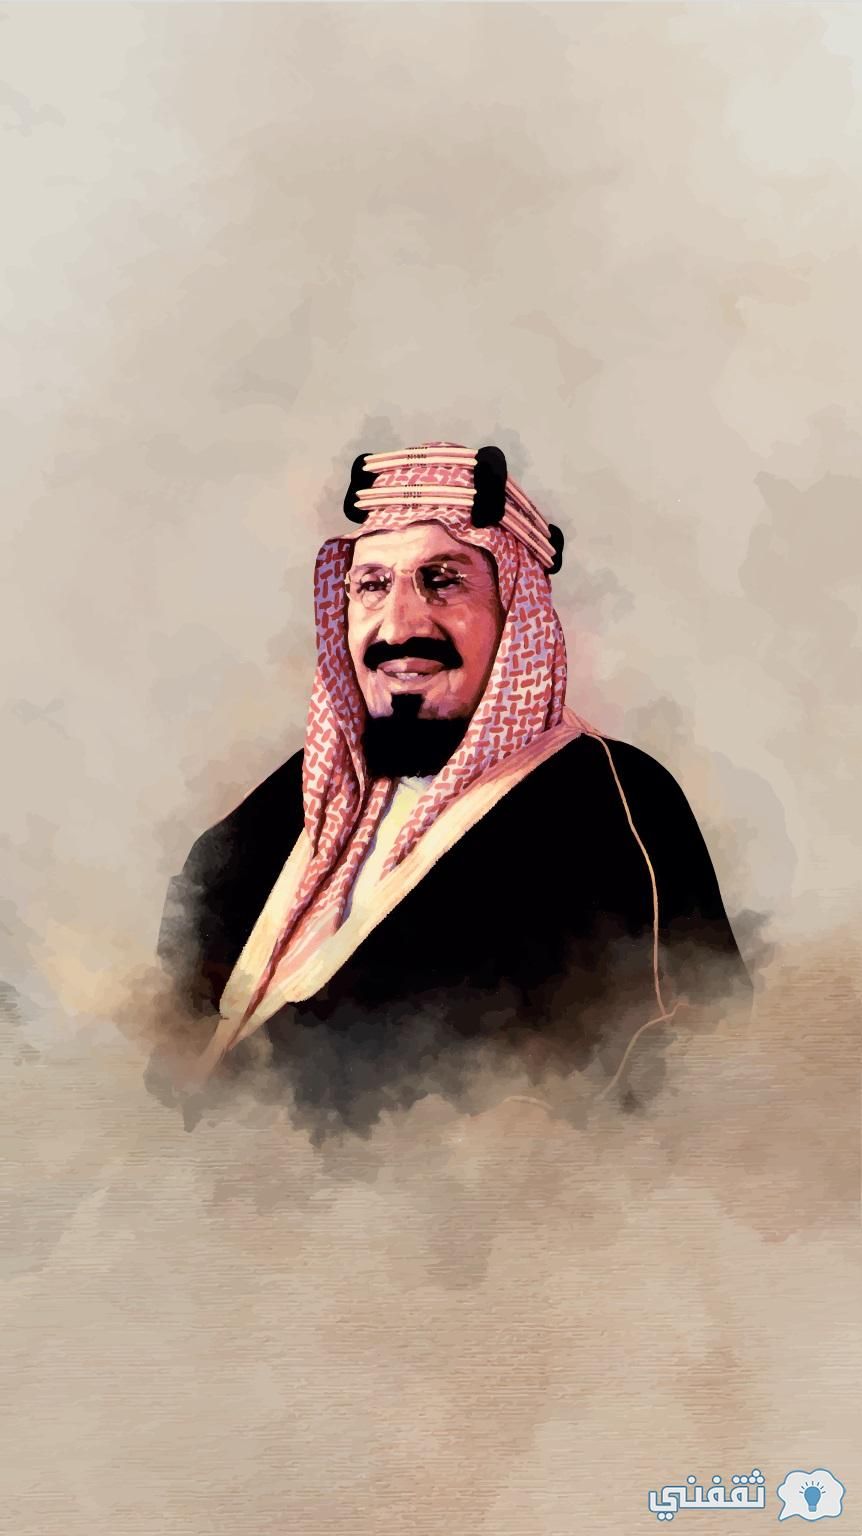 صور القادة الملك عبدالعزيز اليوم الوطني السعودي 92